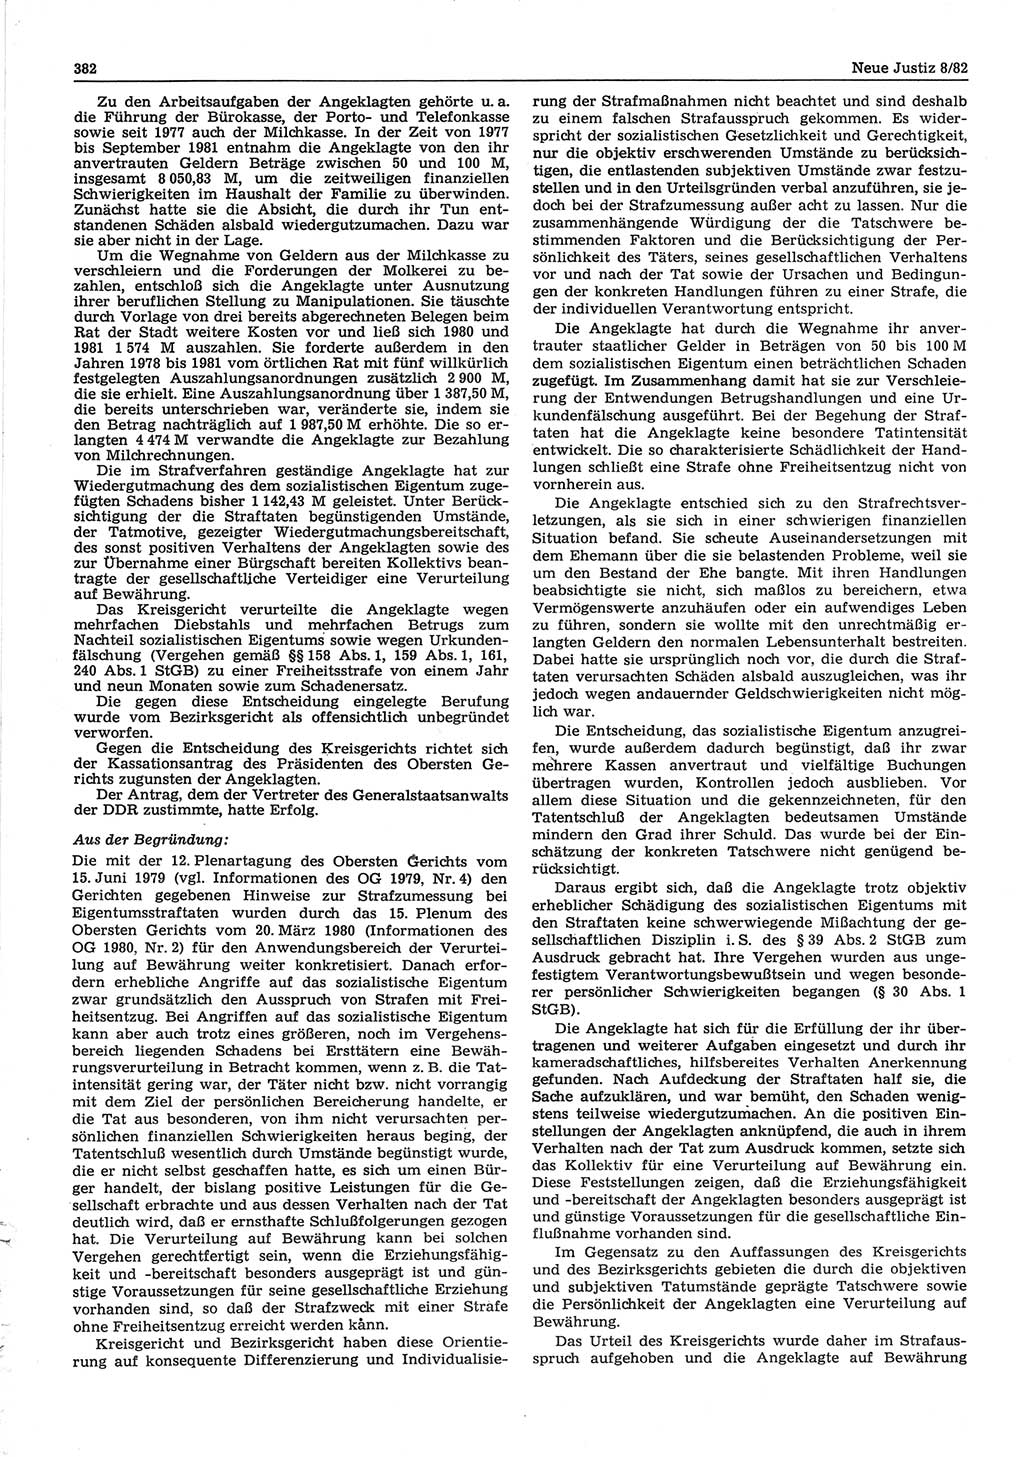 Neue Justiz (NJ), Zeitschrift für sozialistisches Recht und Gesetzlichkeit [Deutsche Demokratische Republik (DDR)], 36. Jahrgang 1982, Seite 382 (NJ DDR 1982, S. 382)